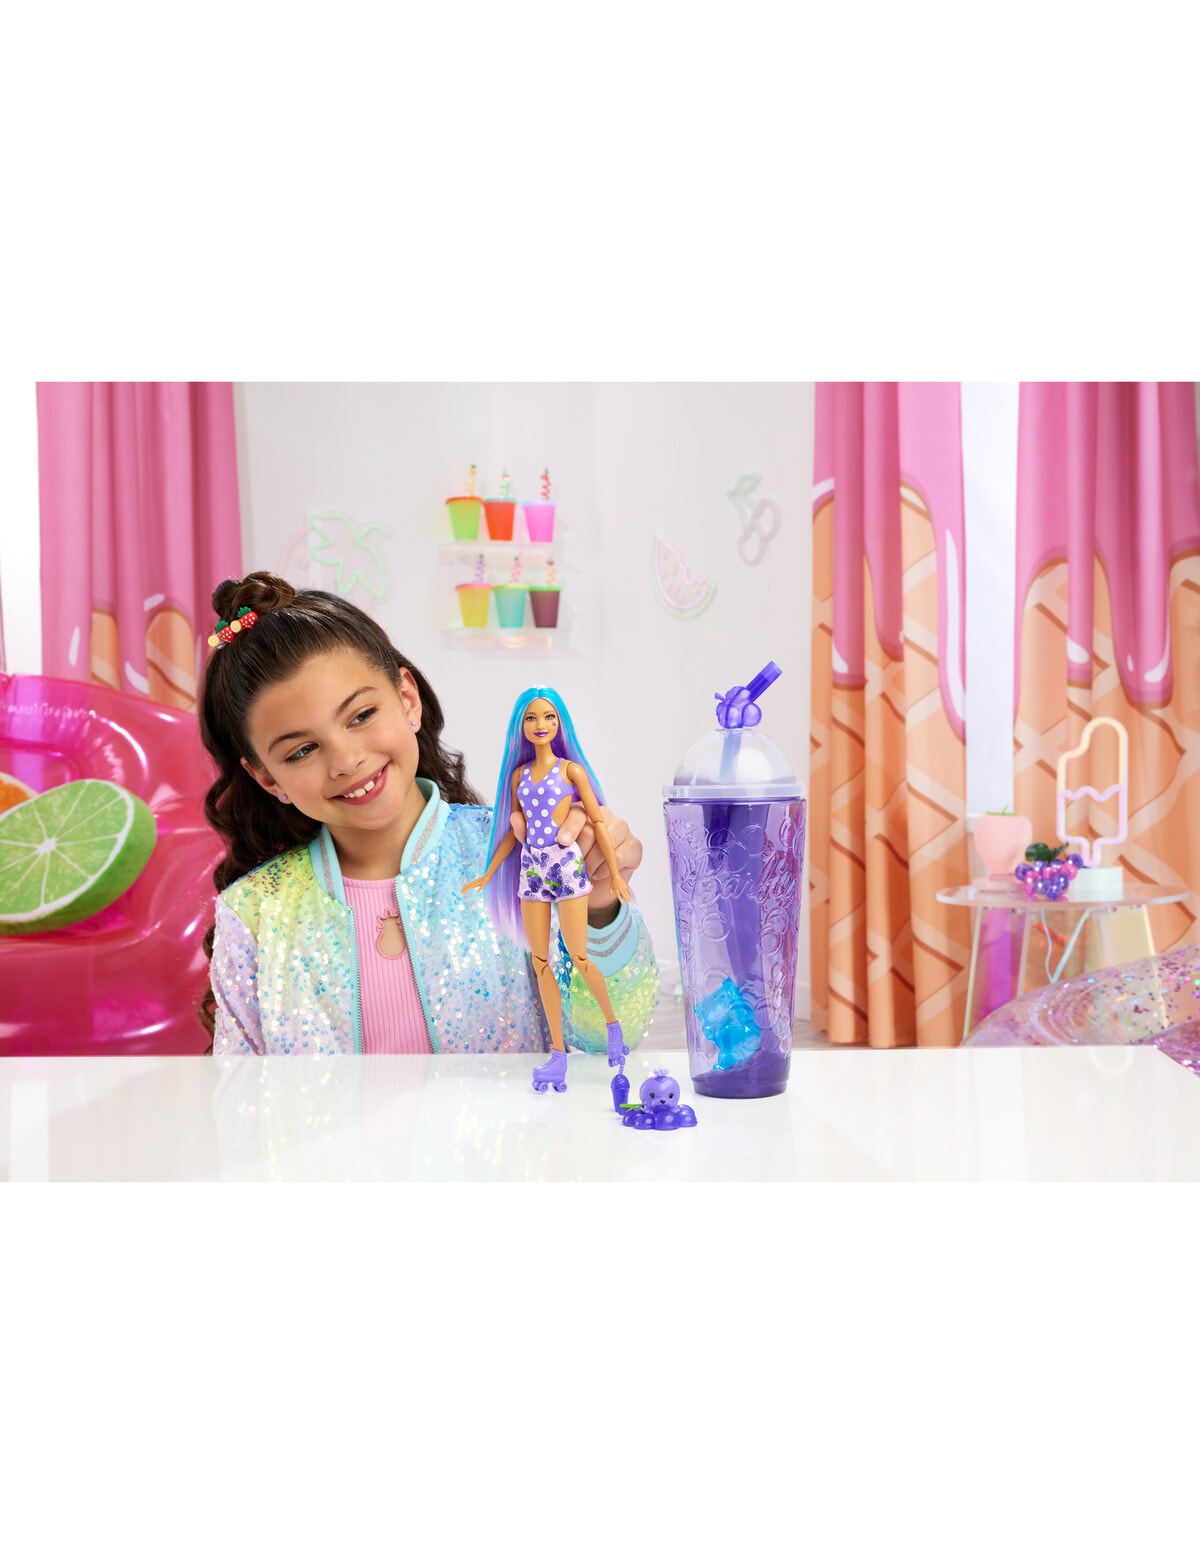 Barbie Pop Reveal Fruit Series Chelsea : Target